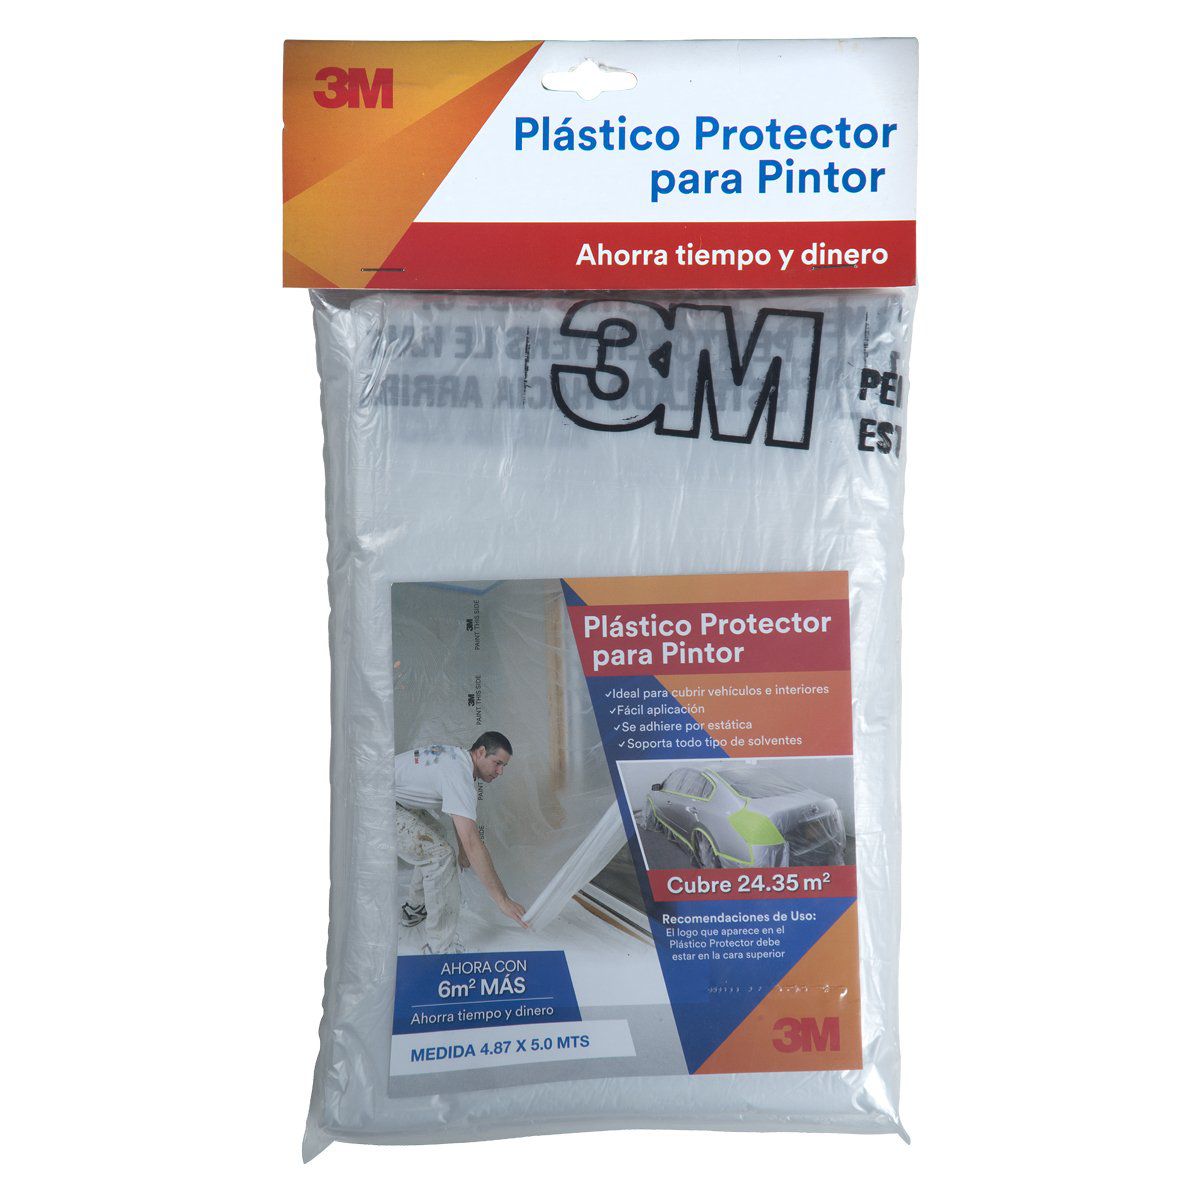 Plástico Protector